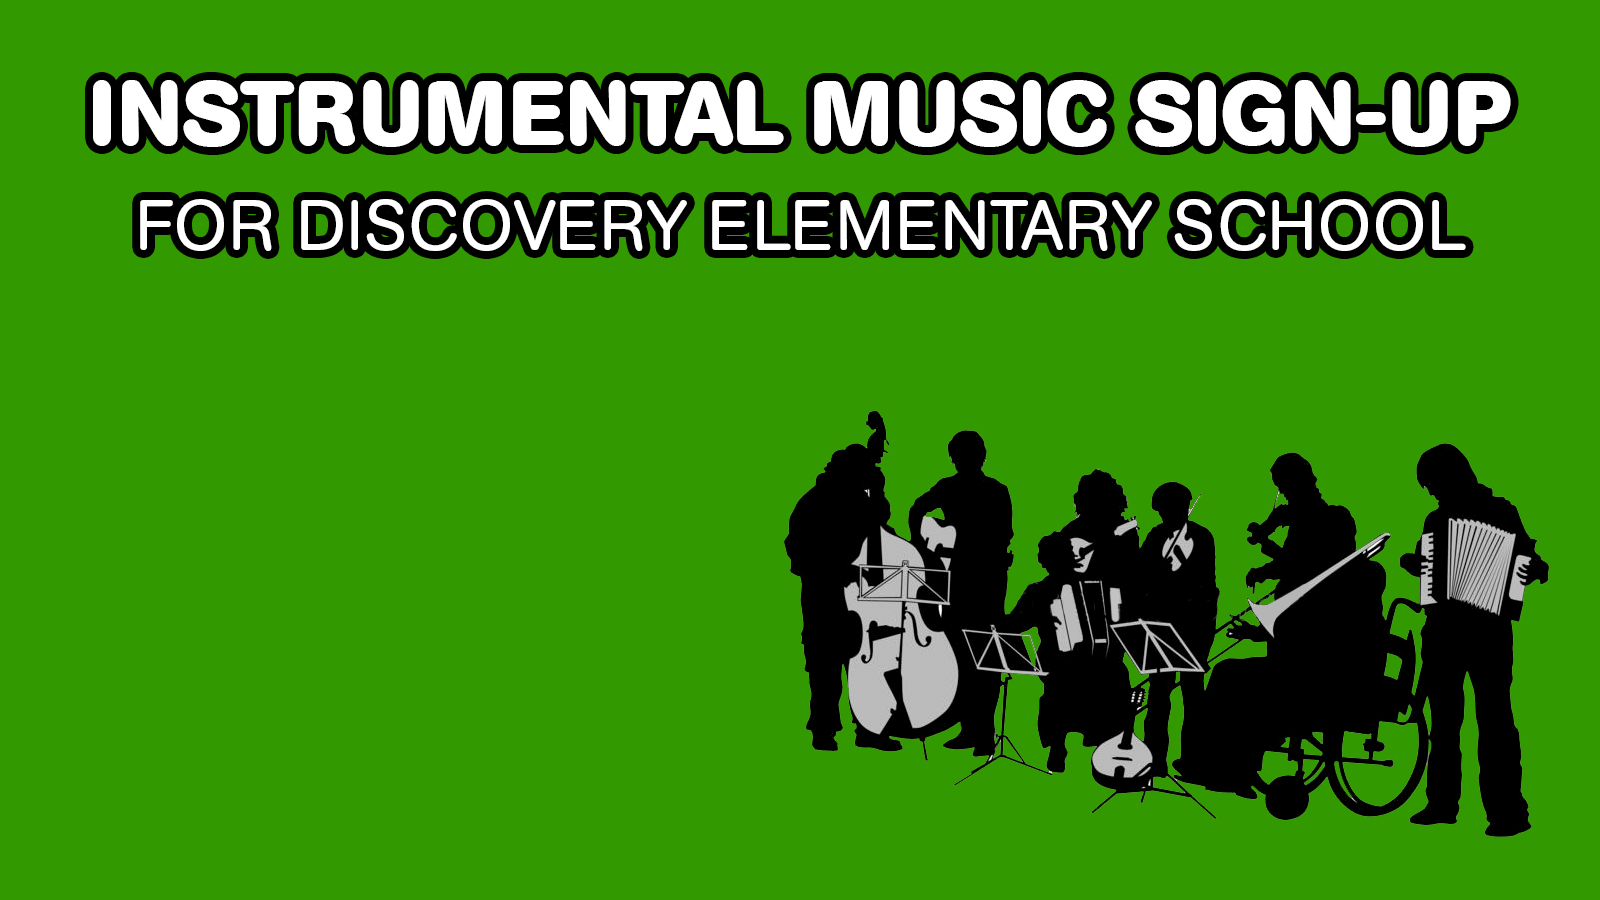 Inscrição para música instrumental